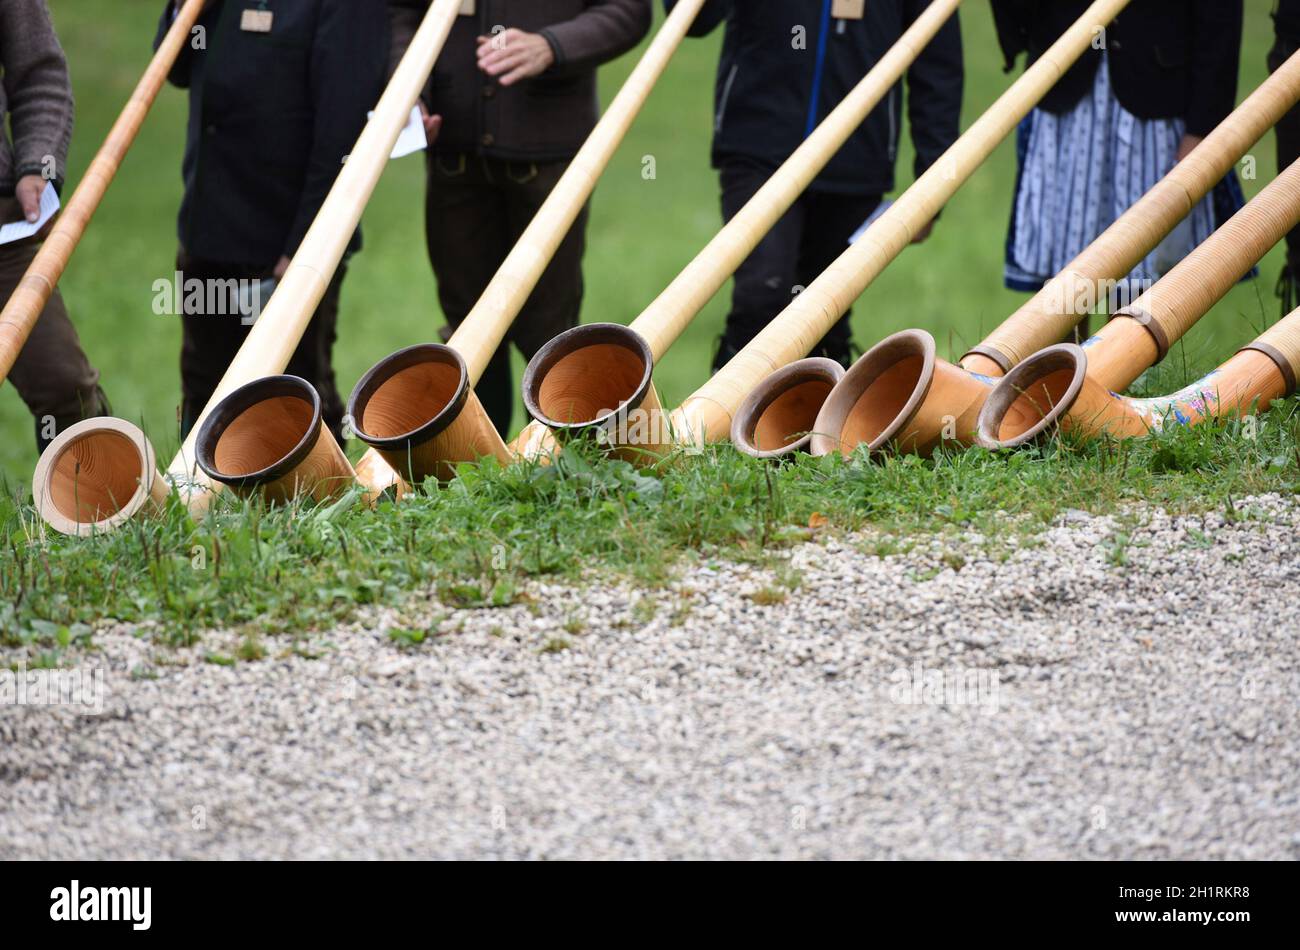 Das 'Alphorn' ist ein mehrere Meter langes hölzernes Musikinstrument - il 'Alphorn' è uno strumento musicale di legno lungo diversi metri Foto Stock